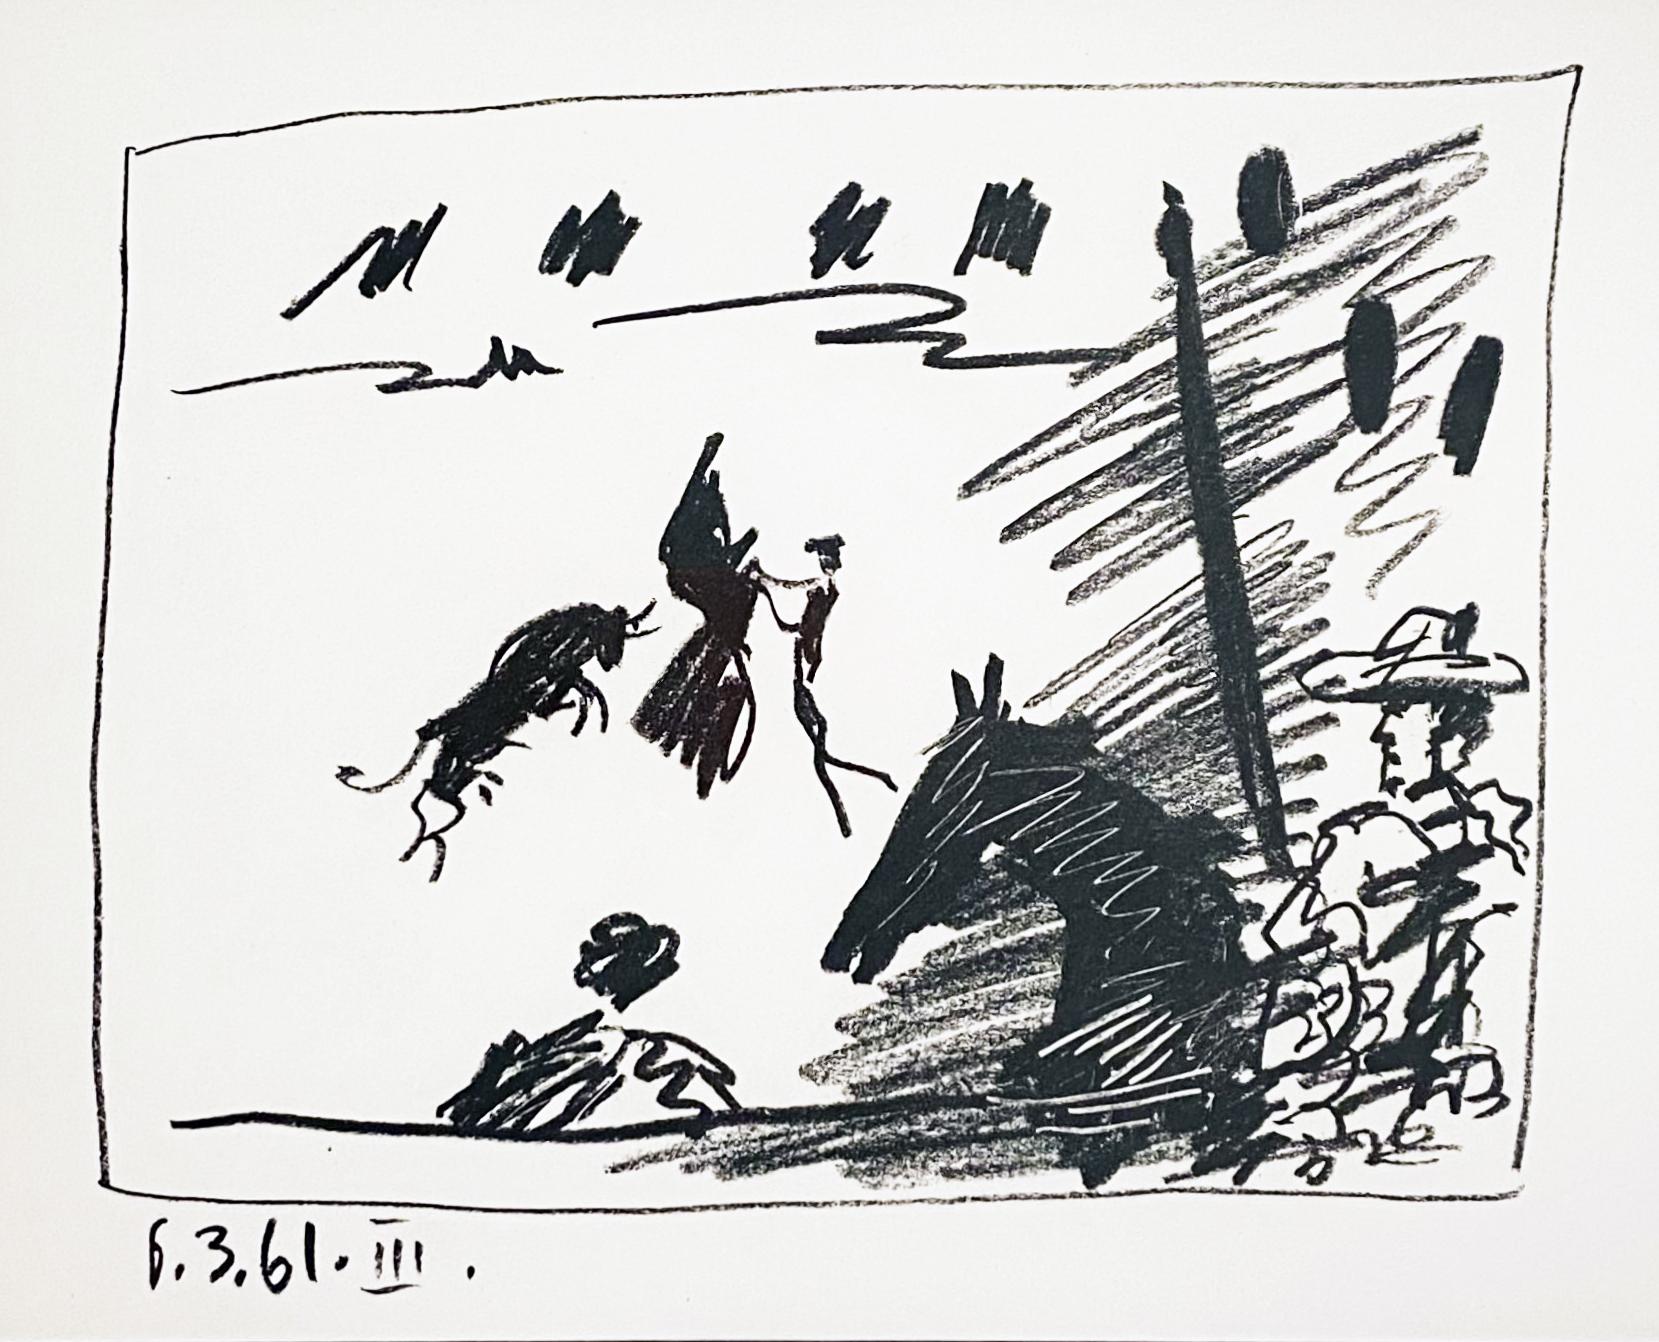 Jeu de la Cape (III) - Print by Pablo Picasso